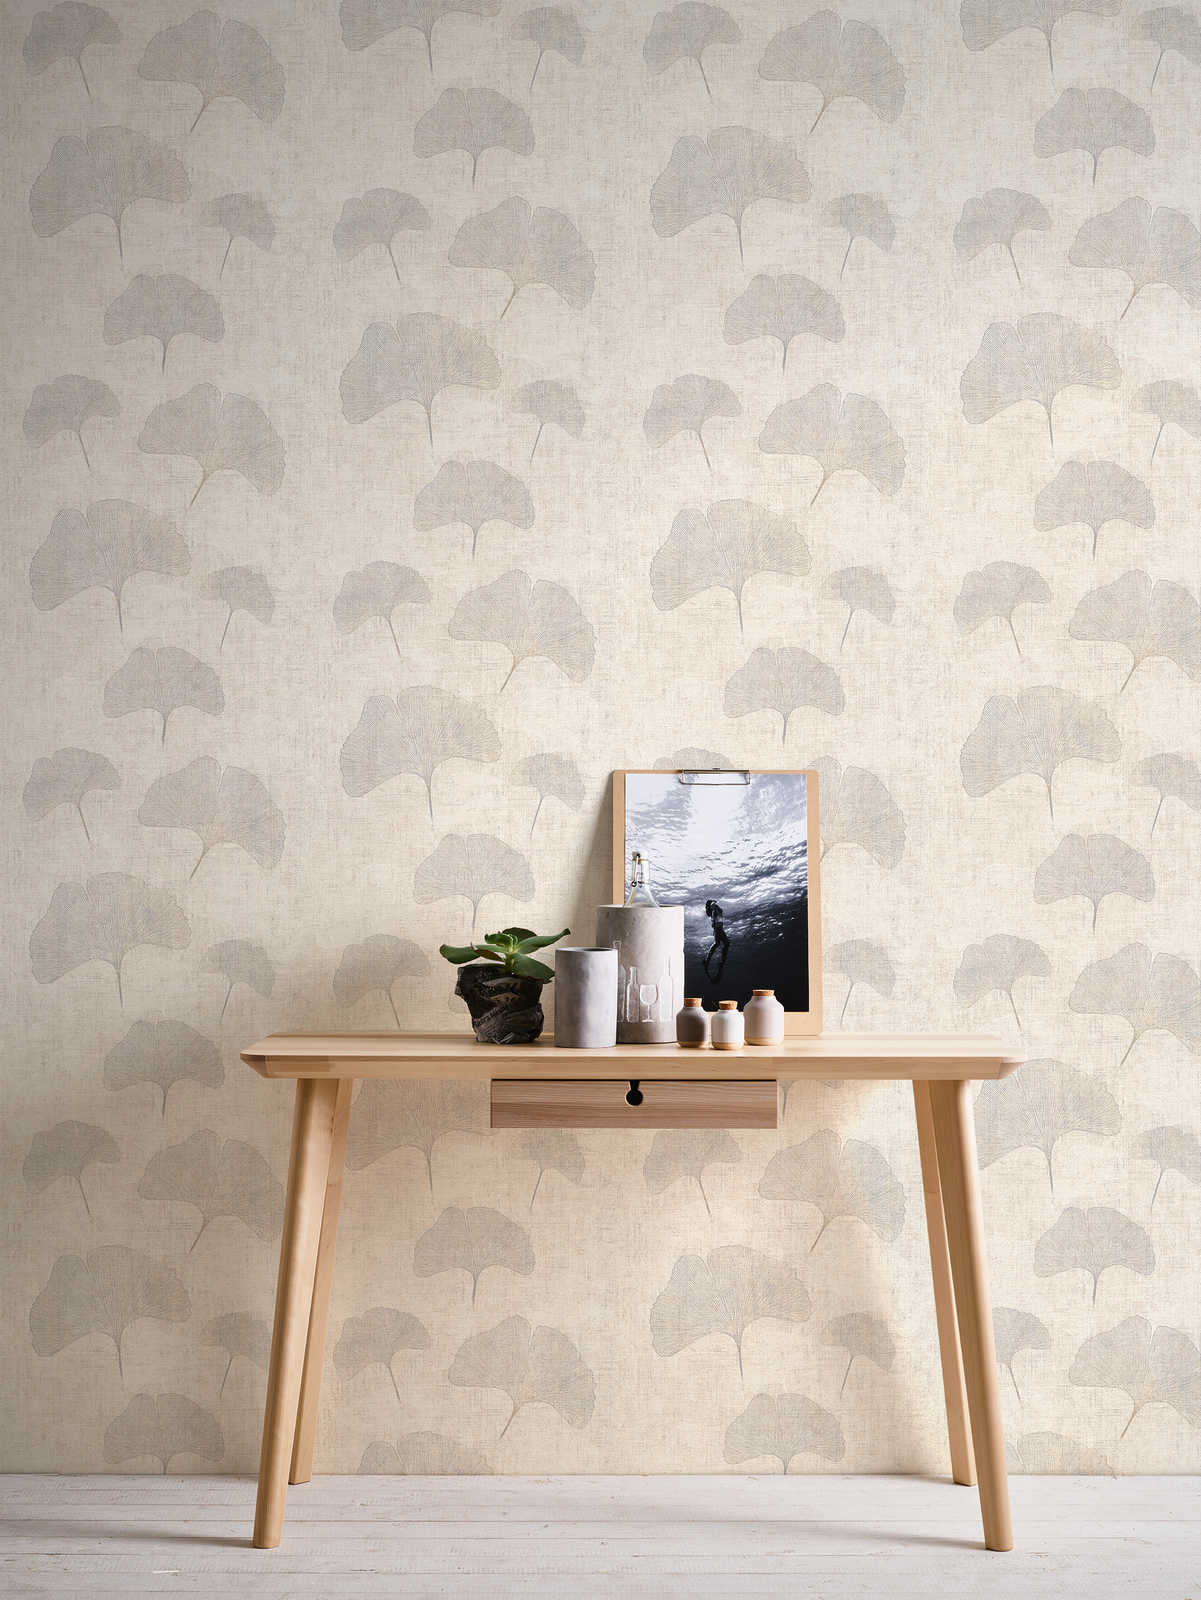             Wallpaper ginko leaves metallic effect, linen look- beige, silver, brown
        